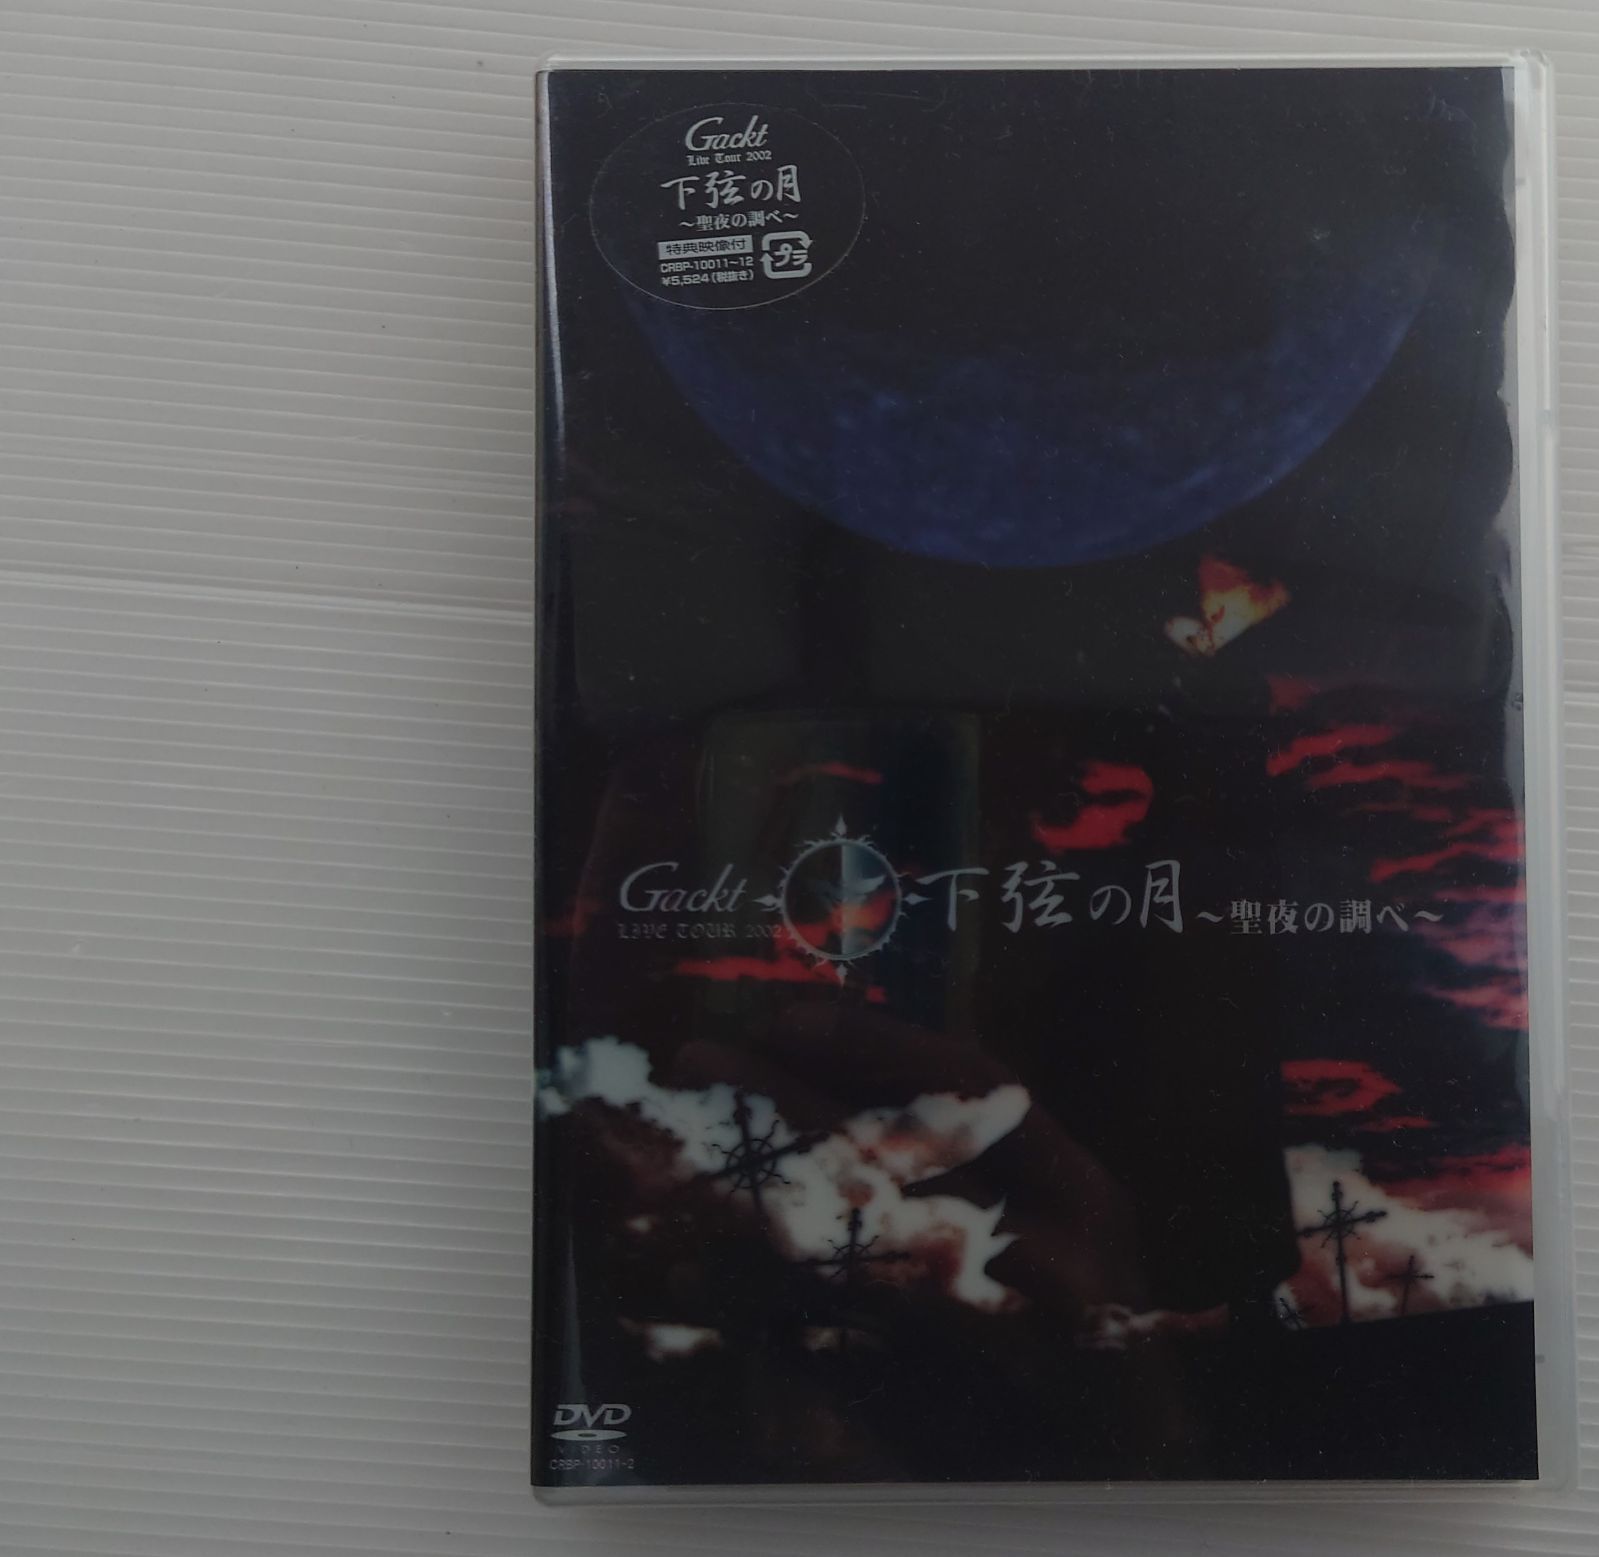 新品未開封DVD】Gackt/ガクト Live Tour 2002 下弦の月 〜聖夜の調べ【2003リリース/本編110分・特典映像付き】〜 -  メルカリ